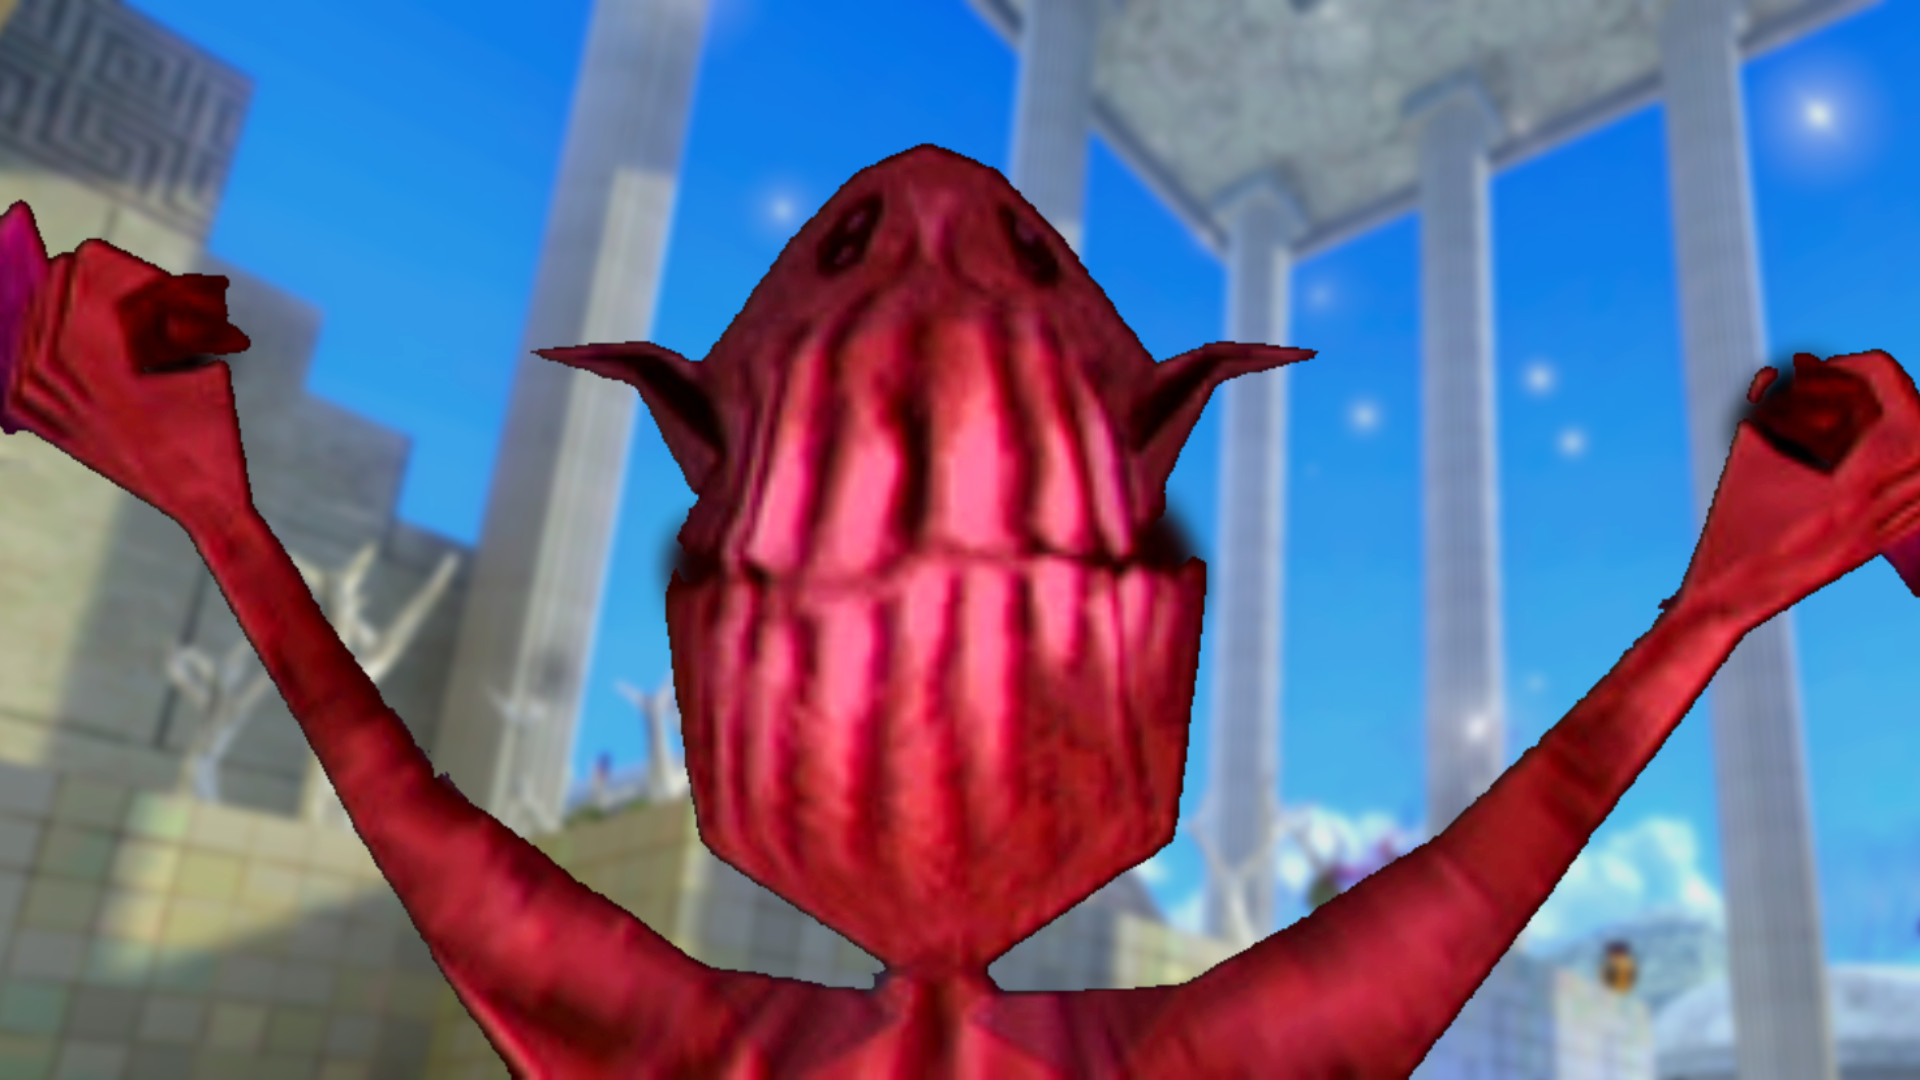 Dusk dev unveils Gremlins inspired retro FPS game Chop Goblins